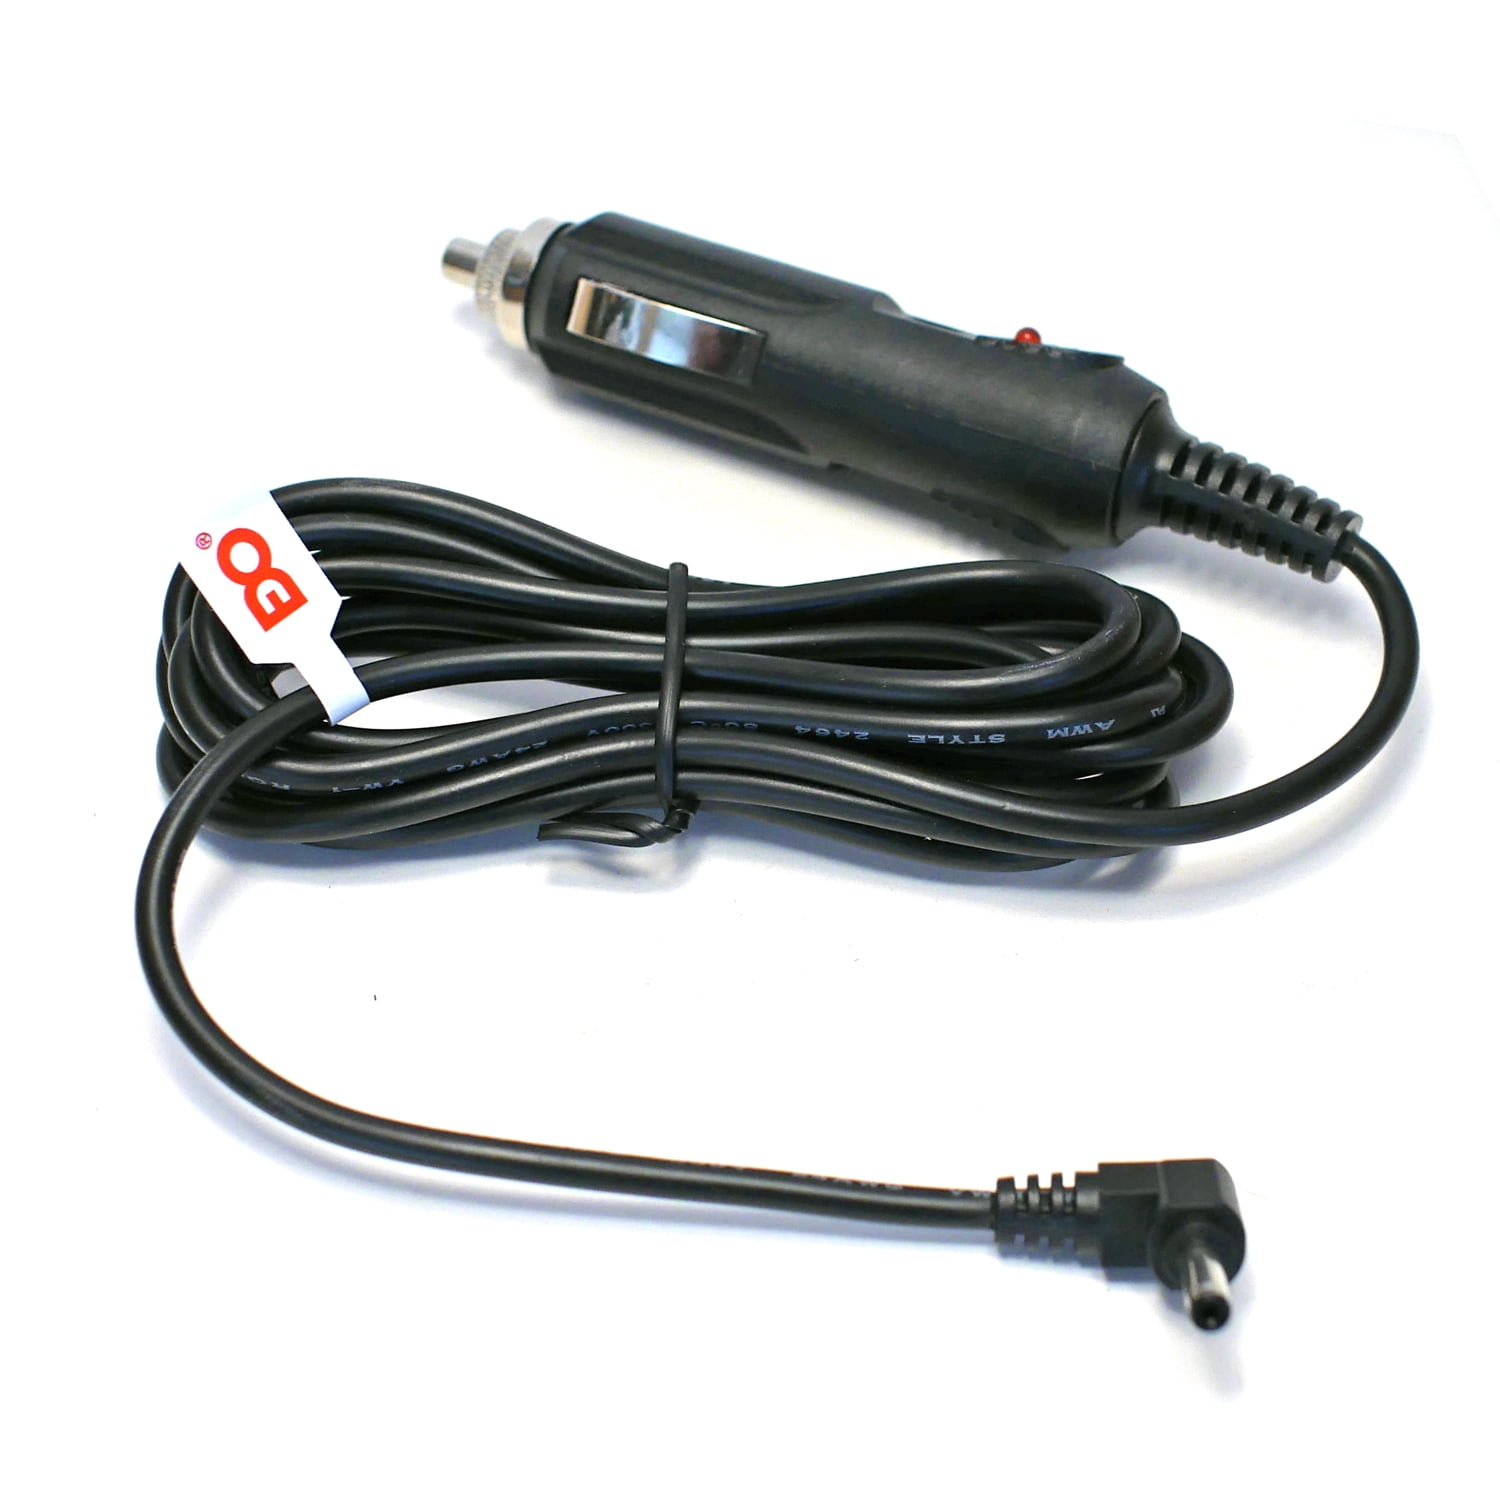 EDO Tech Direct HardWire Power Cord Kit for Whistler Radar Laser Detector 4350440838